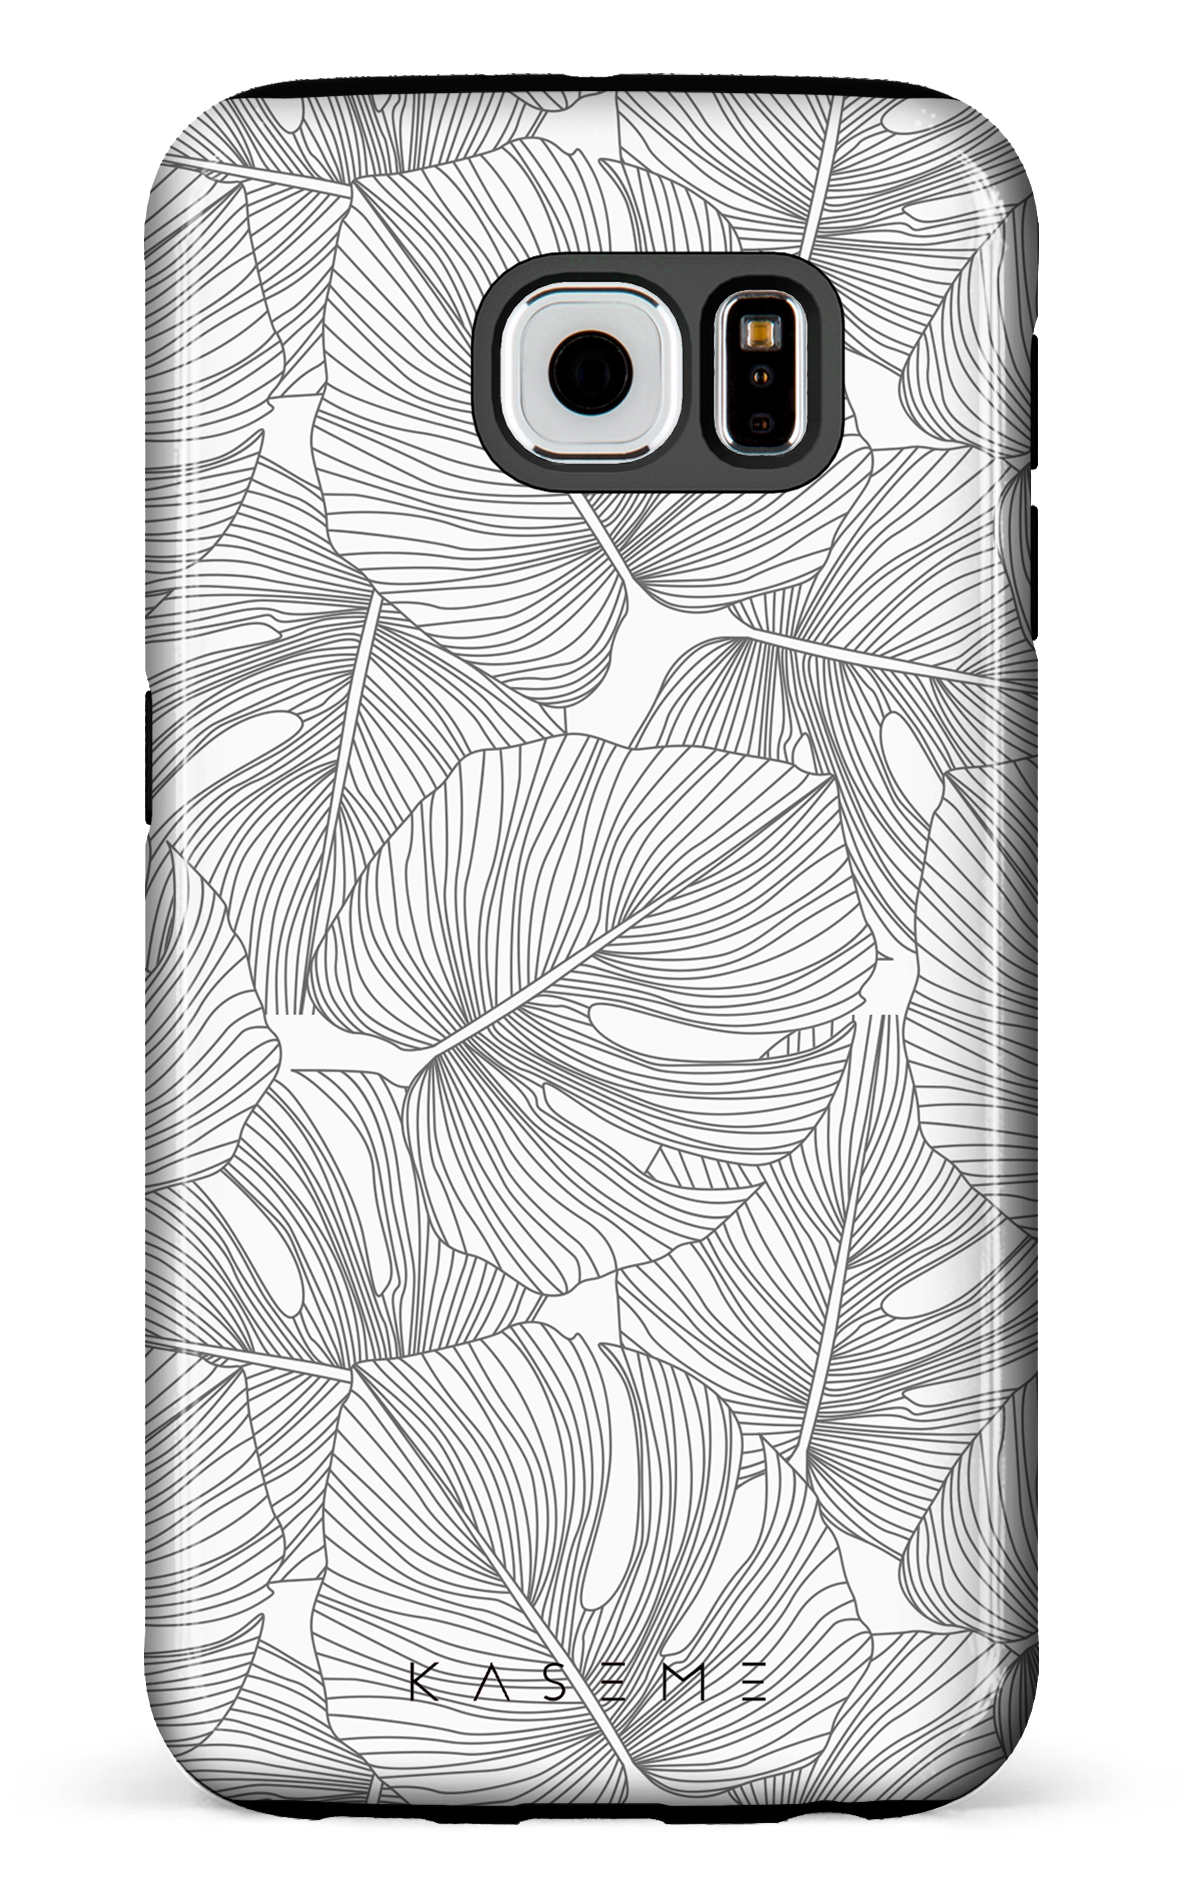 Deliciosa - Galaxy S6